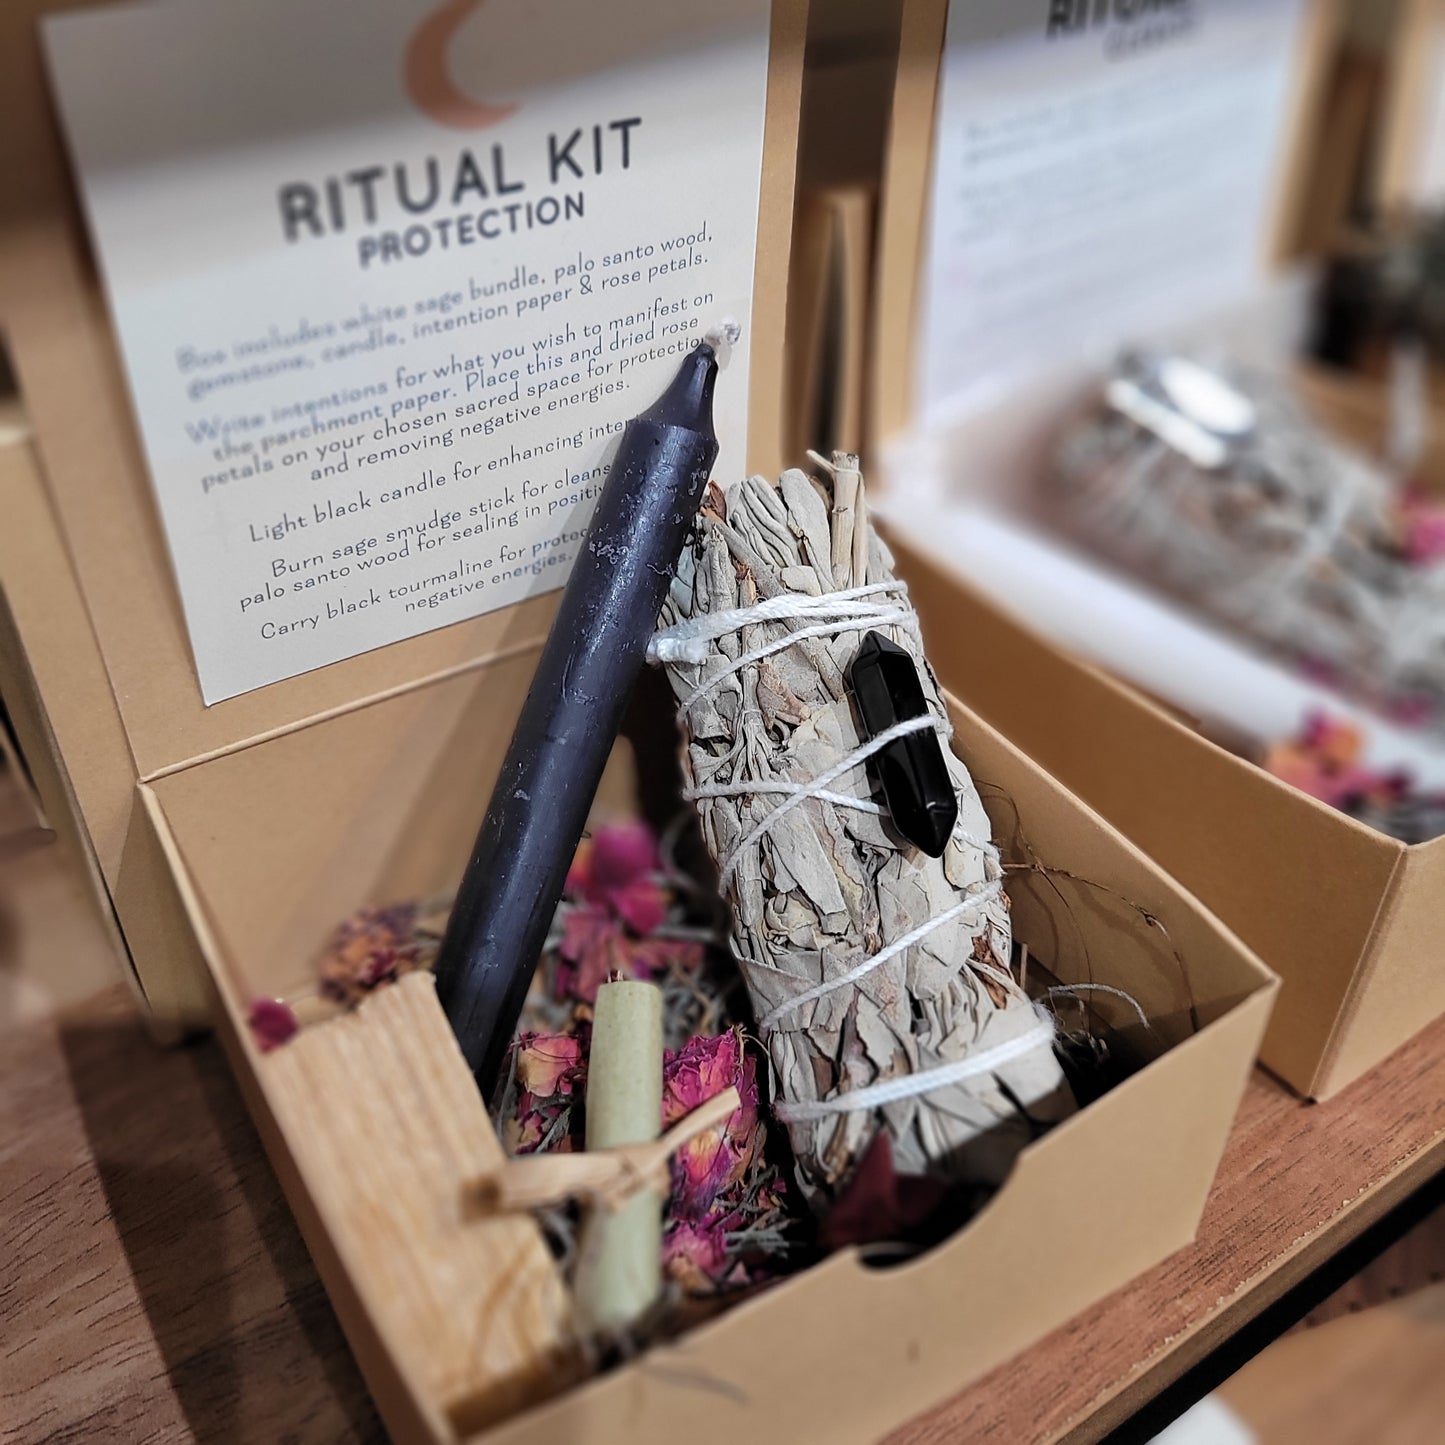 Ritual Kit